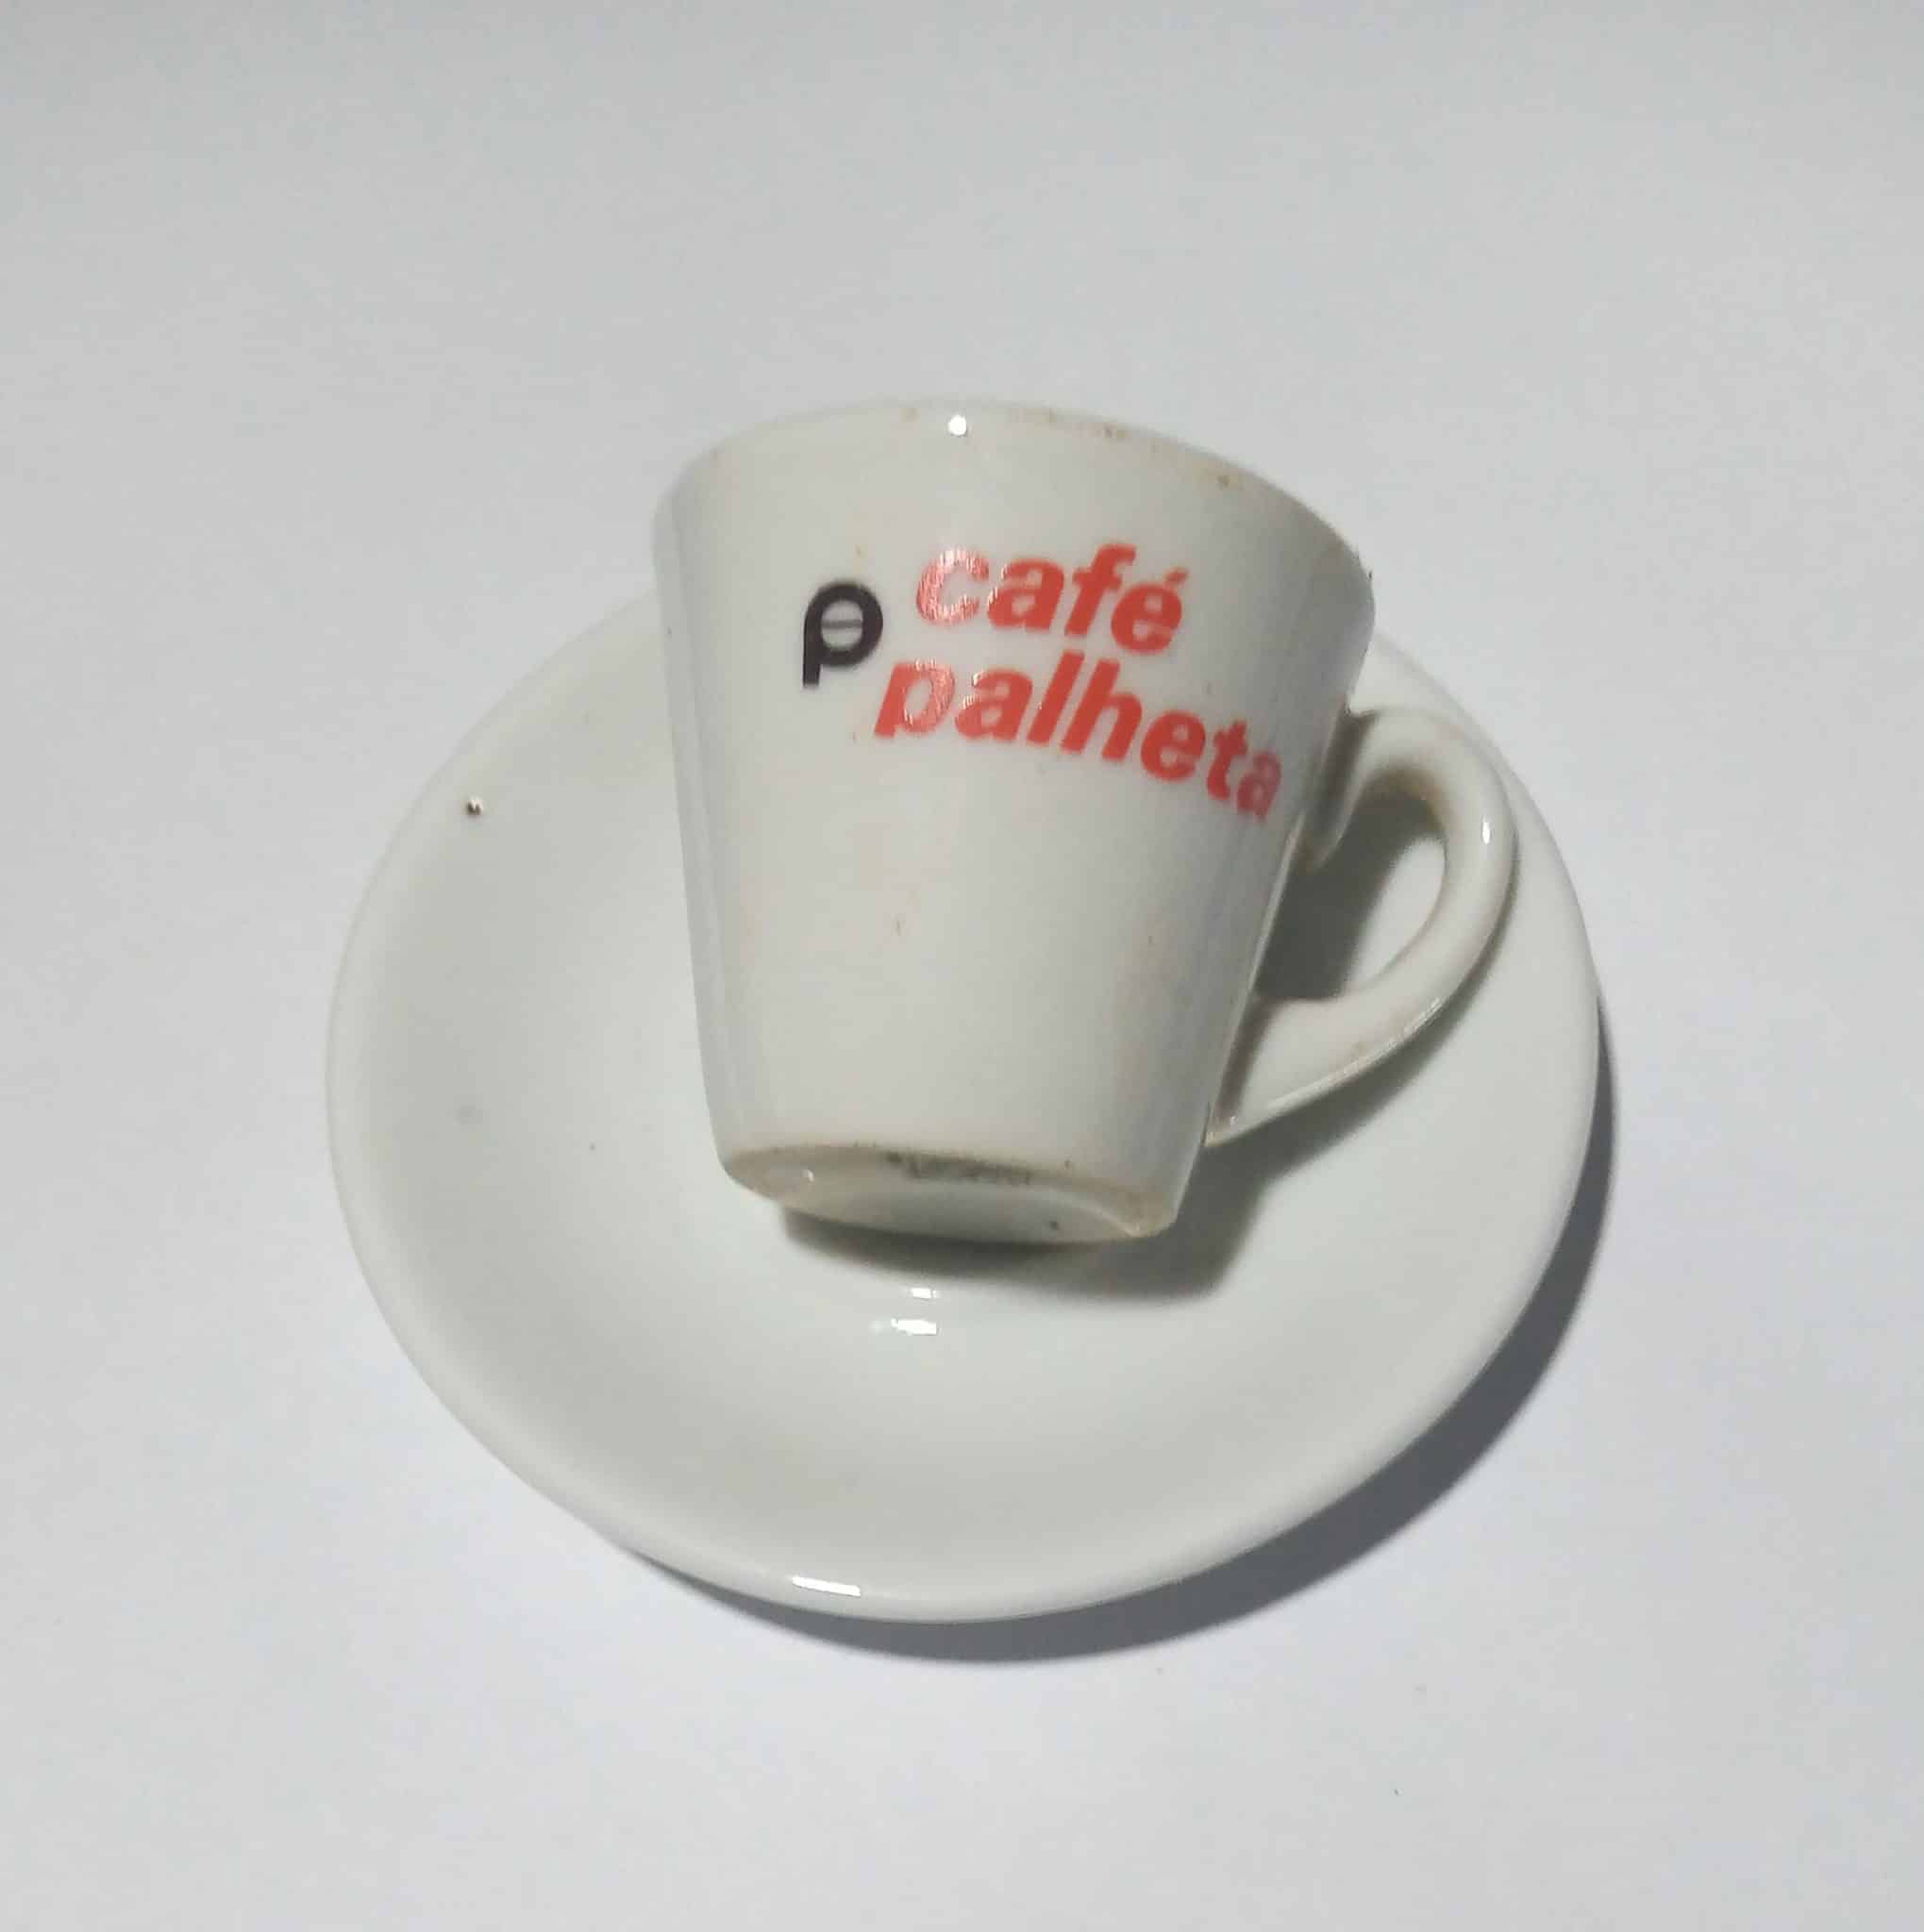 Xicara Pires Porcalana Cafe Palheta Cafe d Olliviers 1 scaled Casa do Colecionador